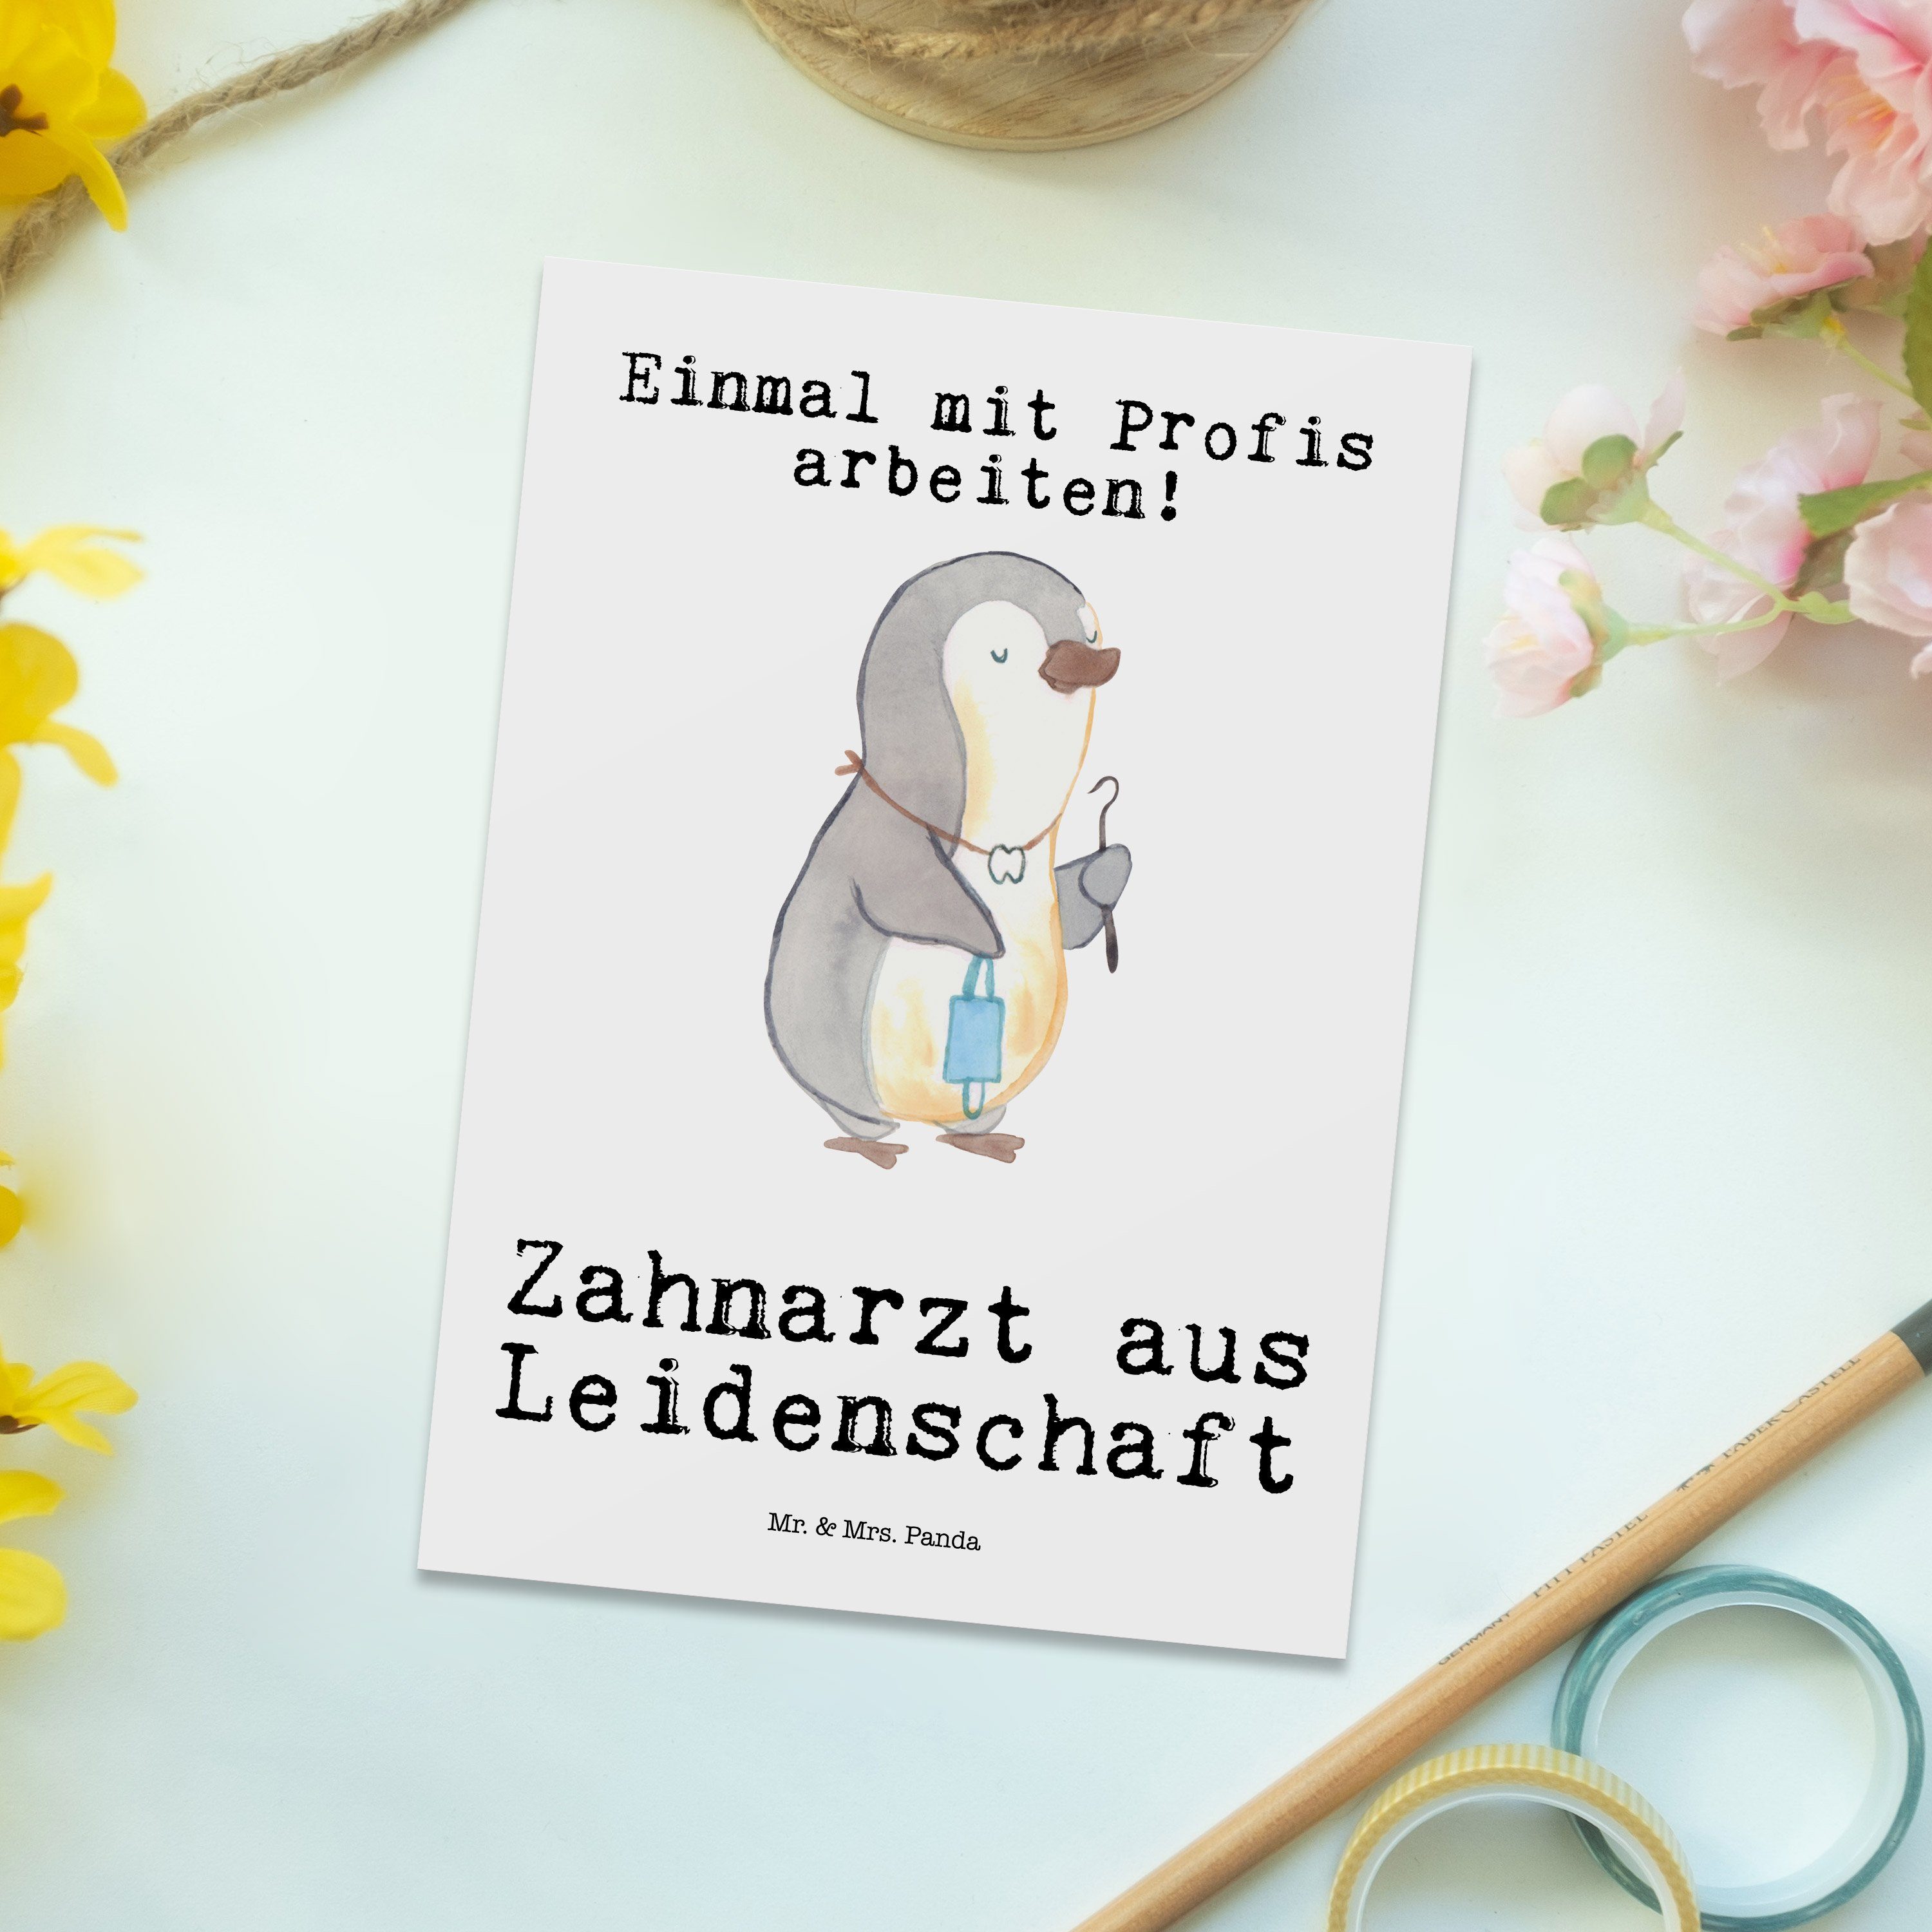 Mr. Postkarte Panda Leidenschaft - Zahnarzt aus & Geschenkkarte, - Einladung Geschenk, Weiß Mrs.